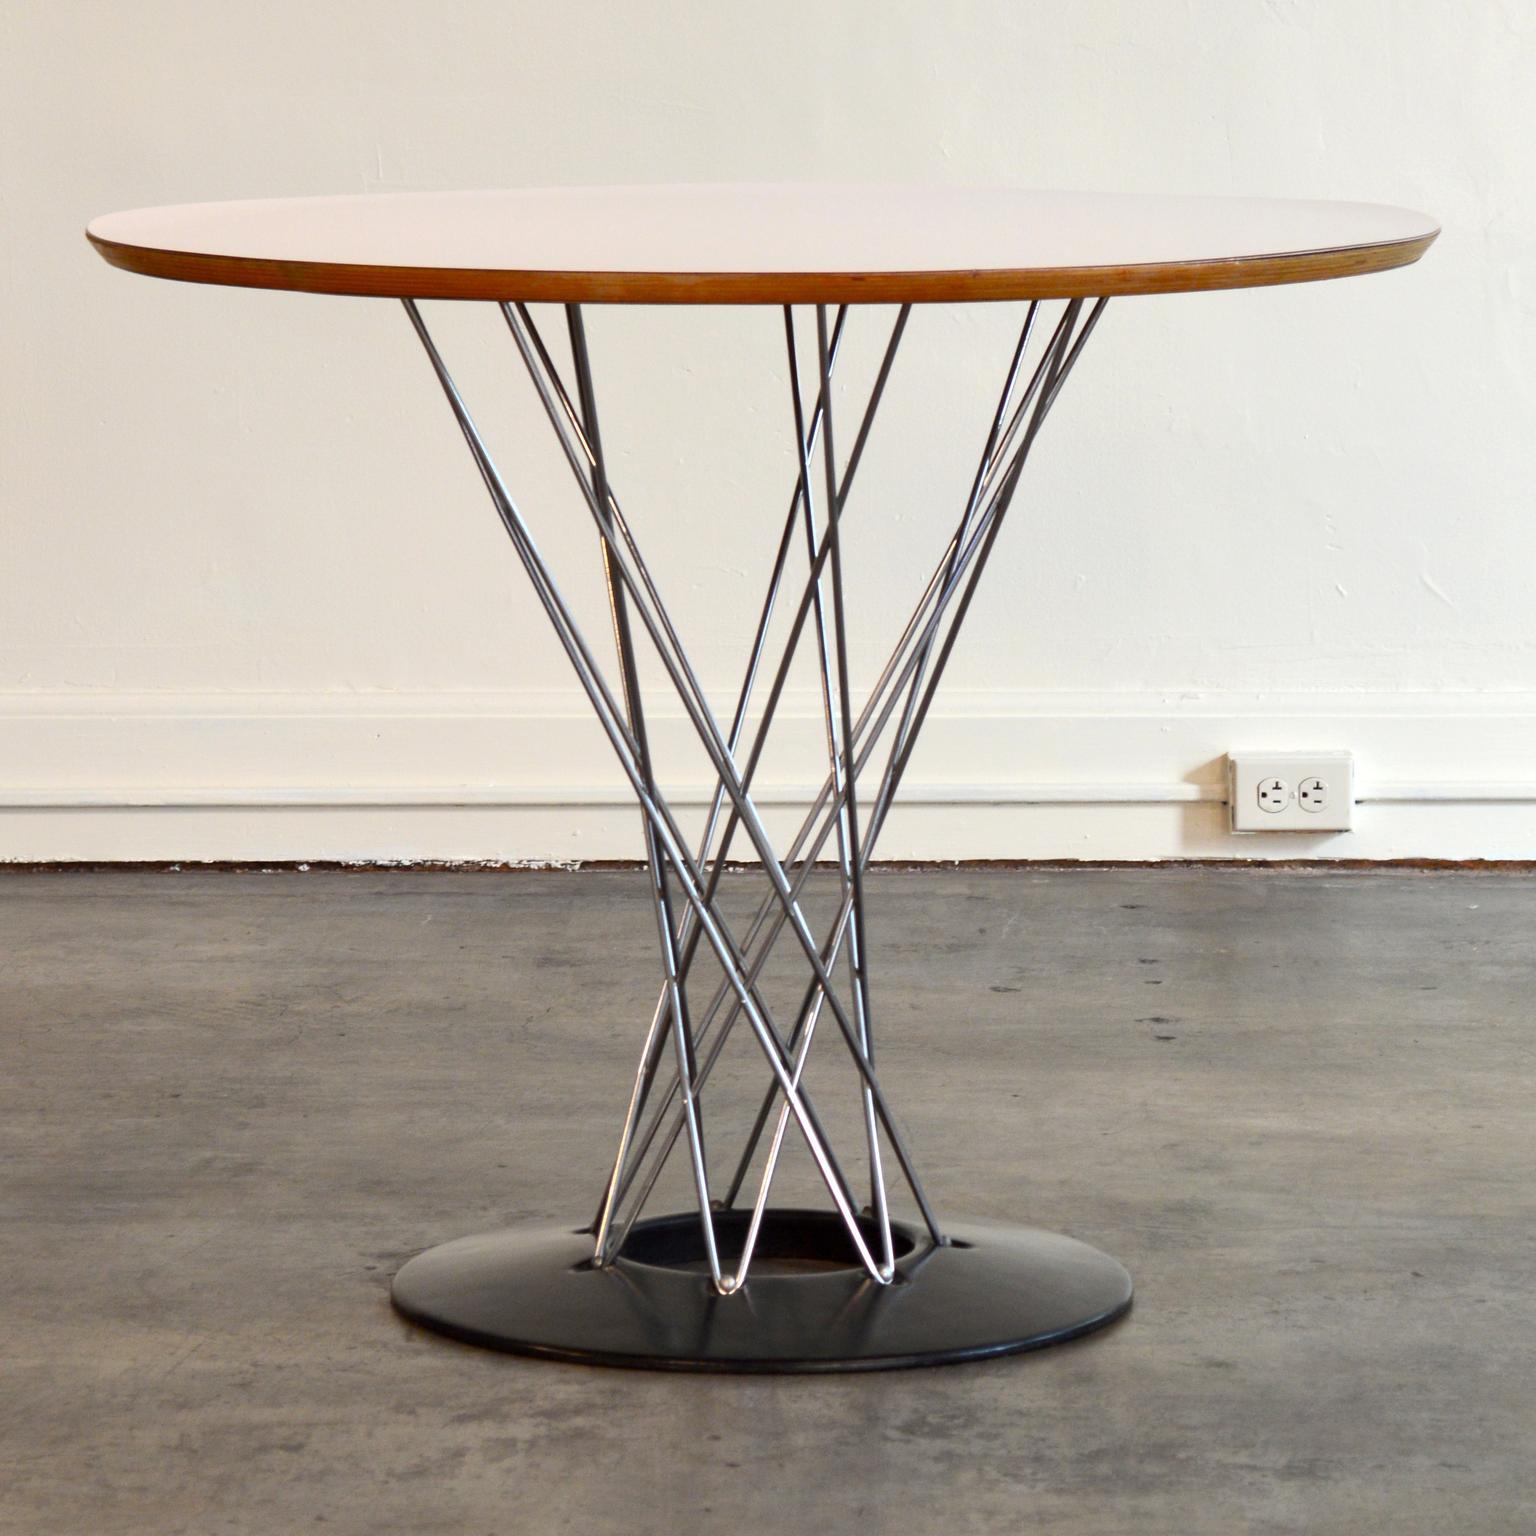 Originally designed as a stool, Isamu Noguchi's 